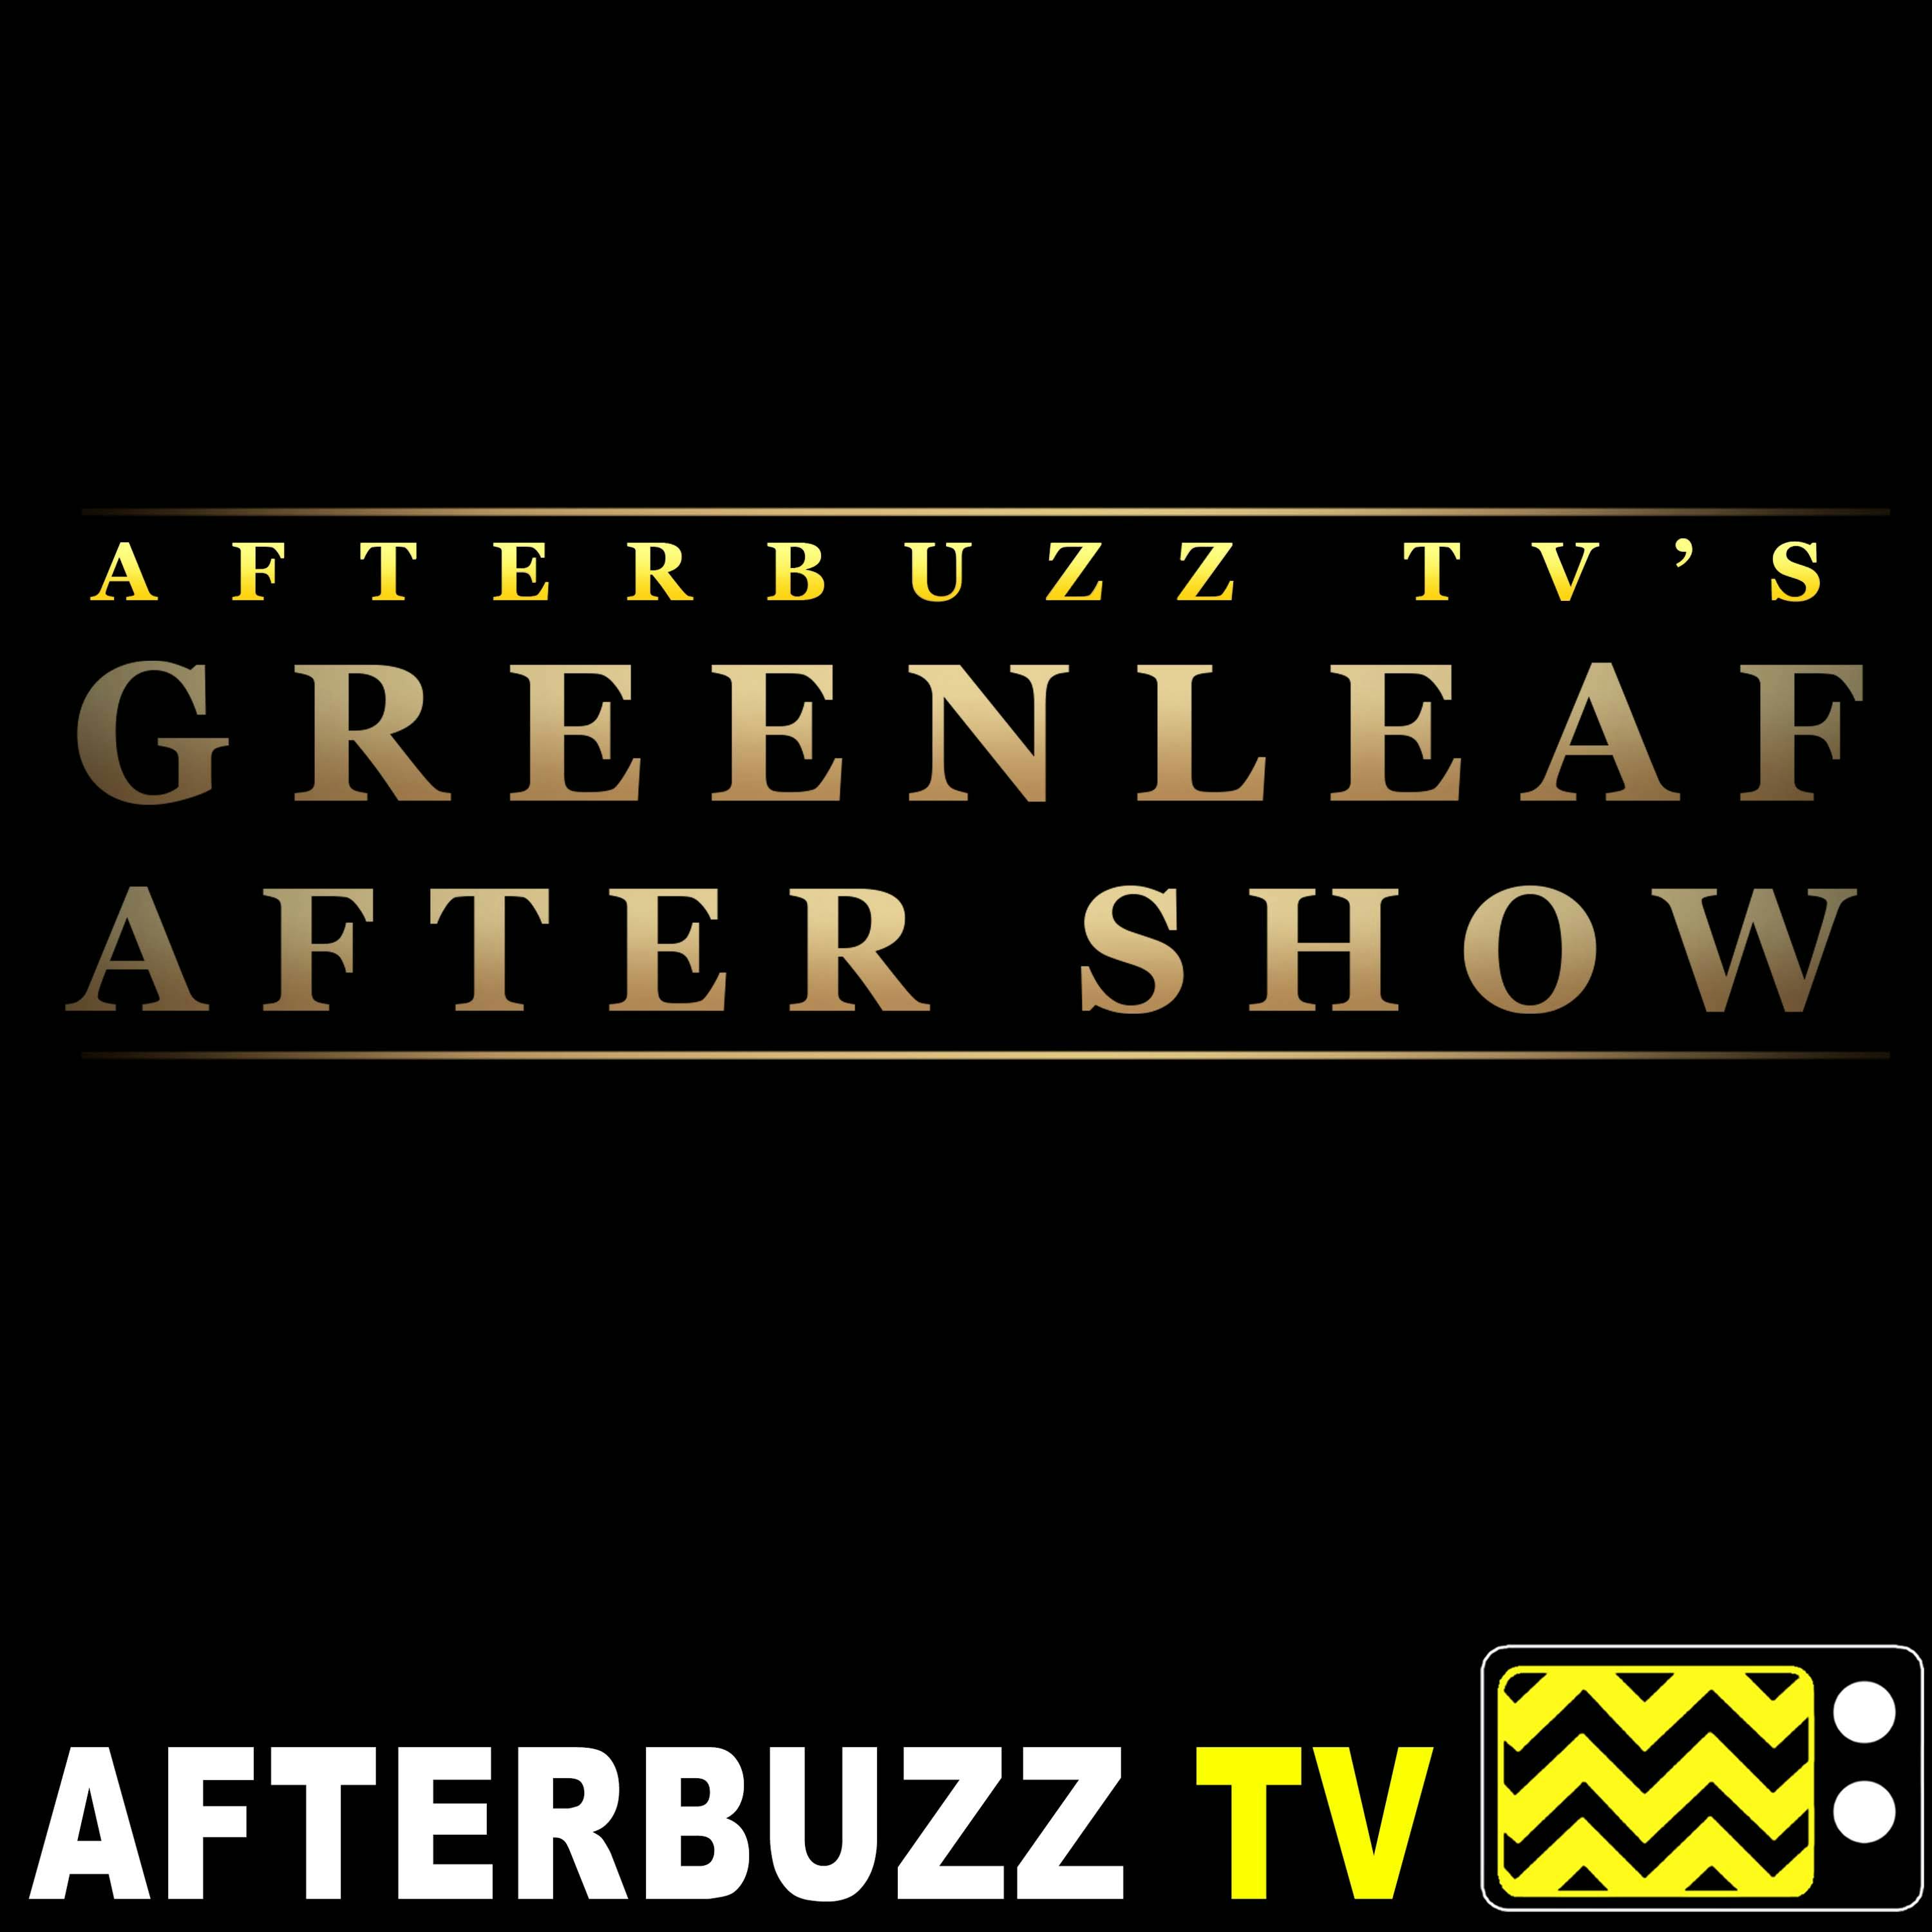 Greenleaf S5 E1 Recap & After Show: A New Beginning